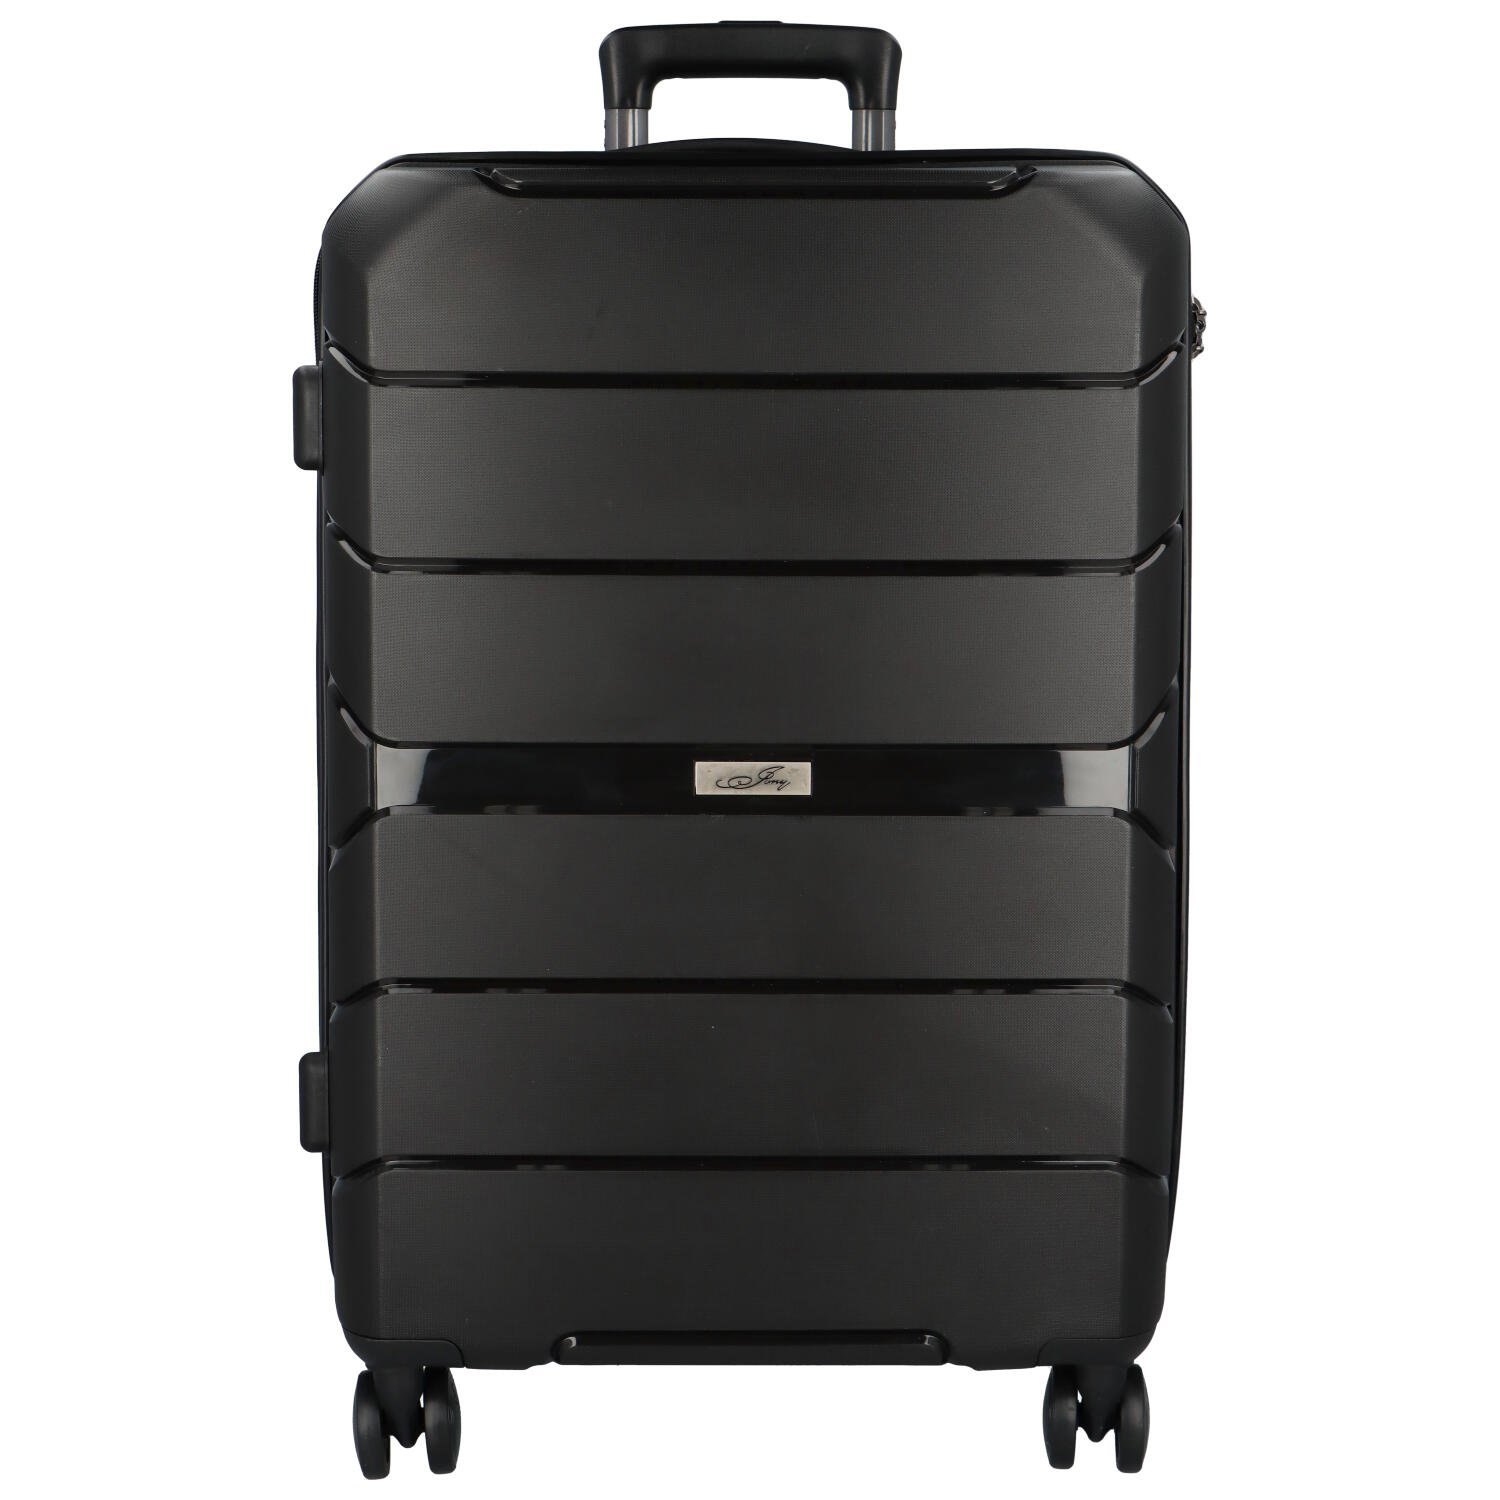 Cestovní plastový kufr Franco velikosti L, černý